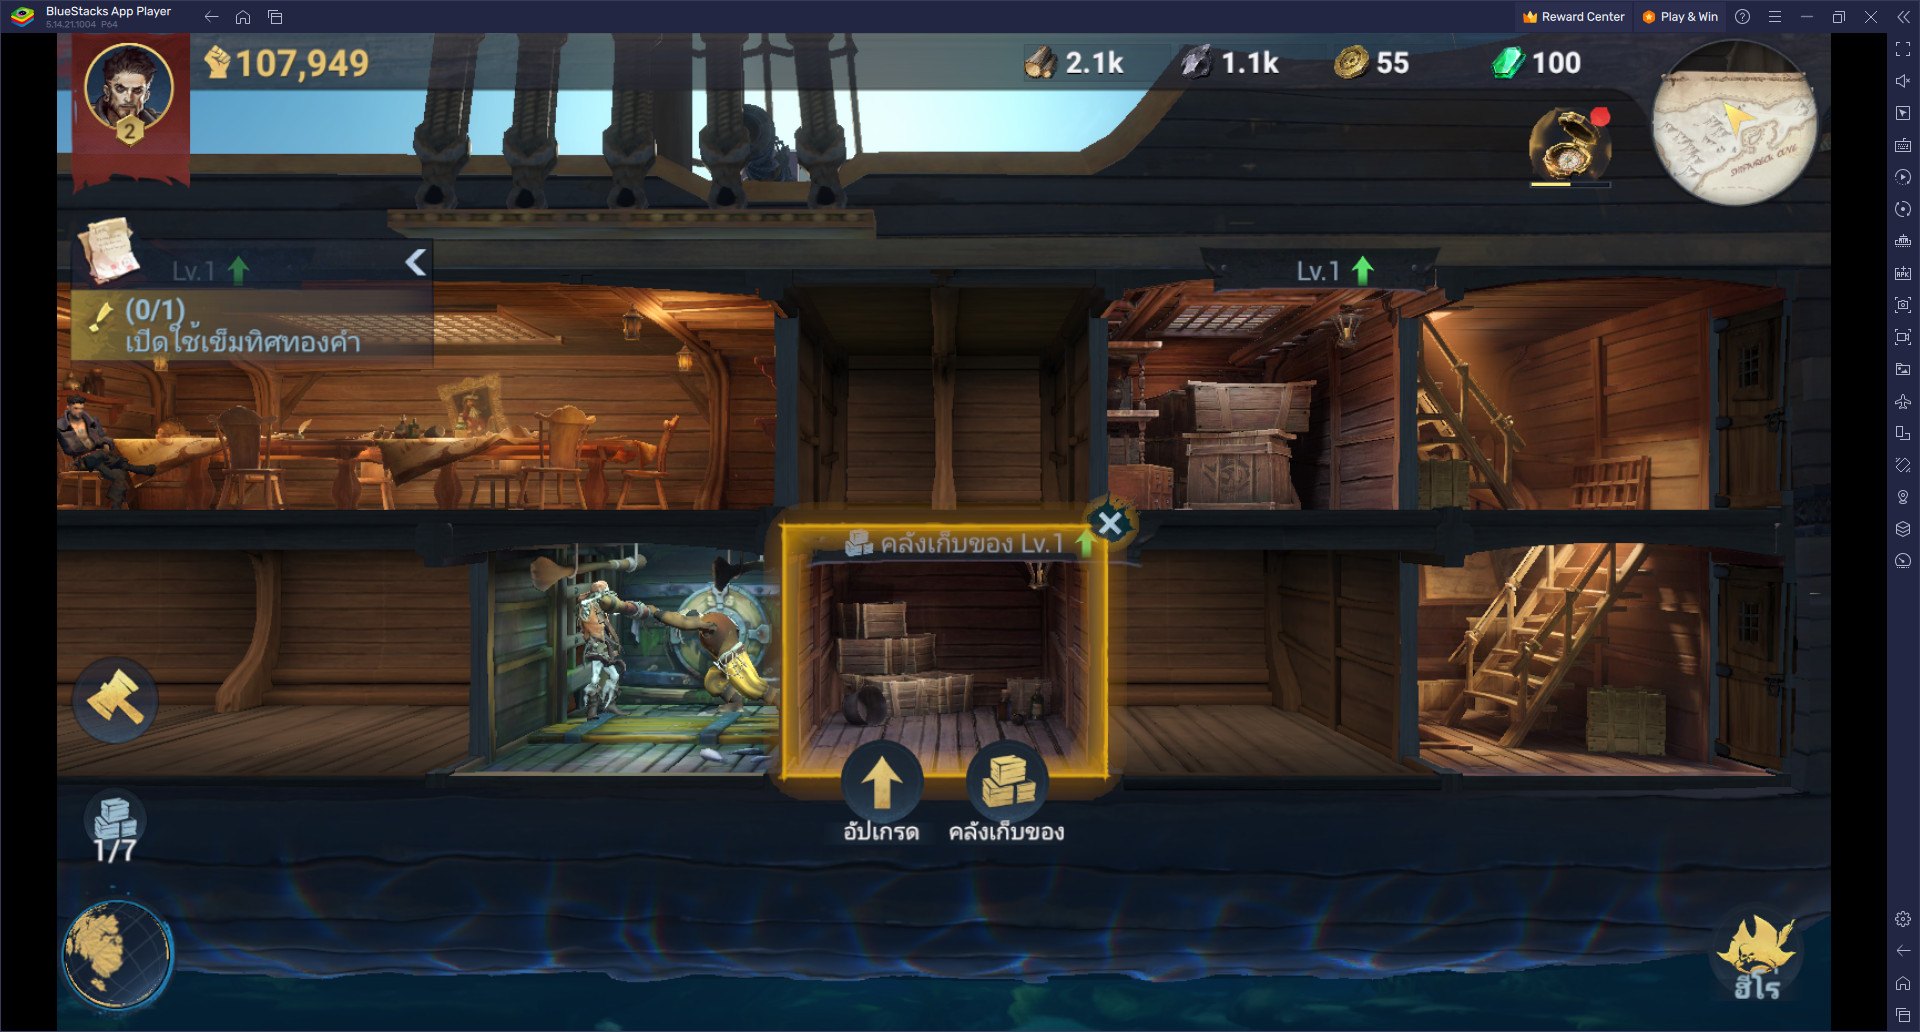 คู่มือการเล่น Sea of Conquest: Pirate War สำหรับผู้เล่นใหม่